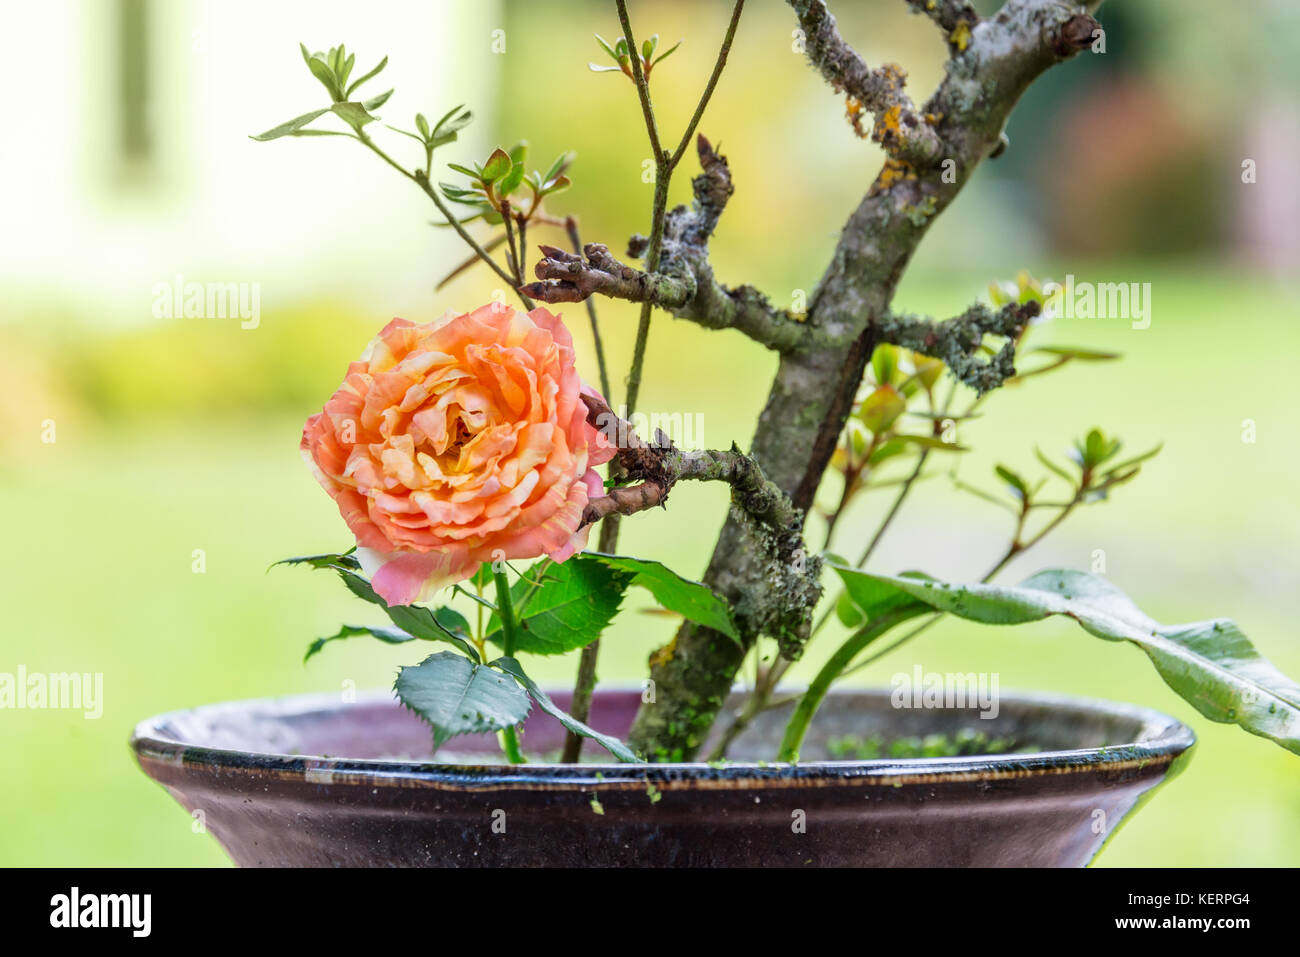 Cerca de un arreglo floral de China con una naranja rosa Foto de stock